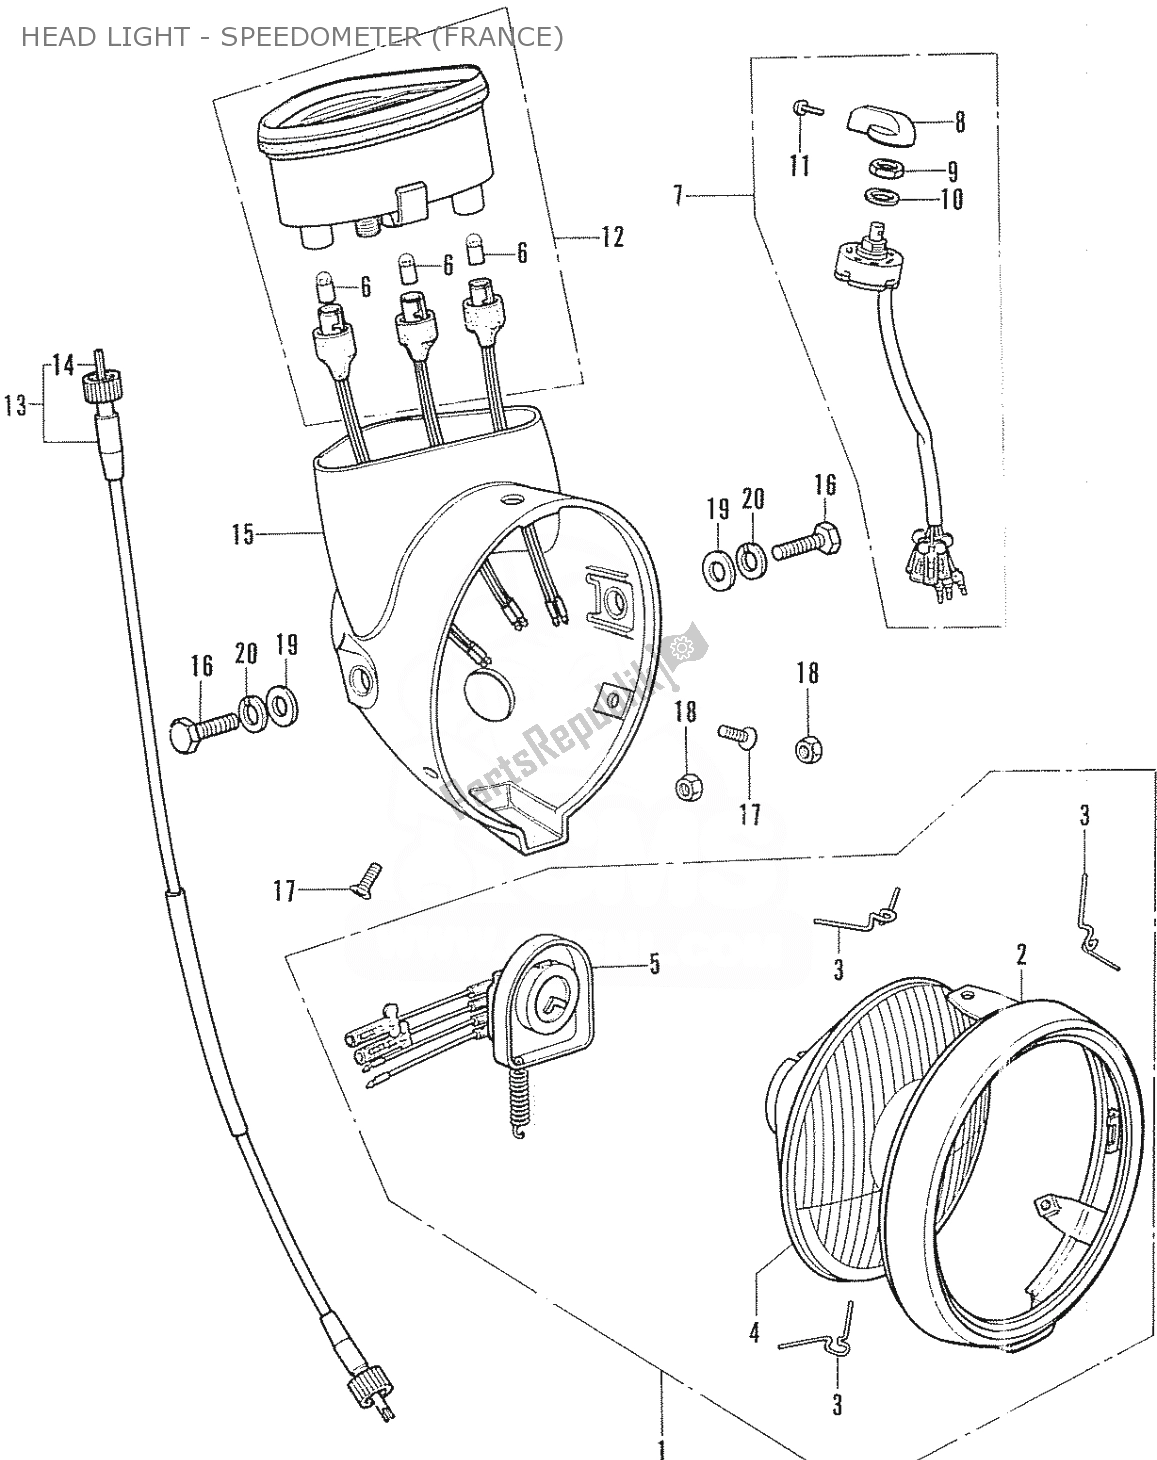 Alle onderdelen voor de Head Light - Speedometer (france) van de Honda CF 70 Chaly 1950 - 2023